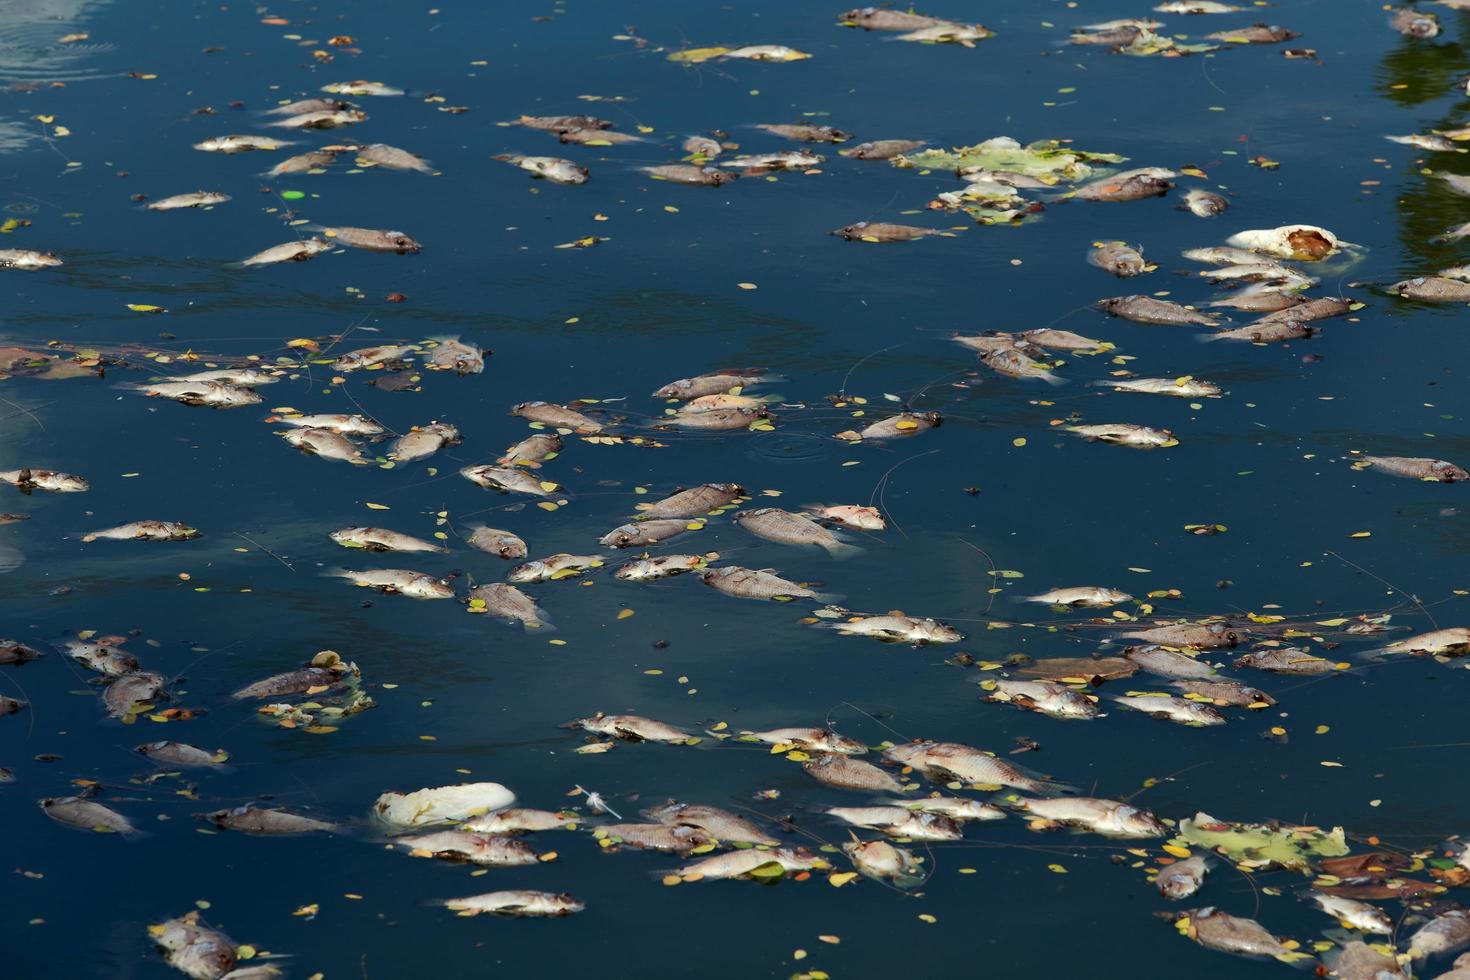 peixes mortos flutuavam na água escura, poluição da água foto